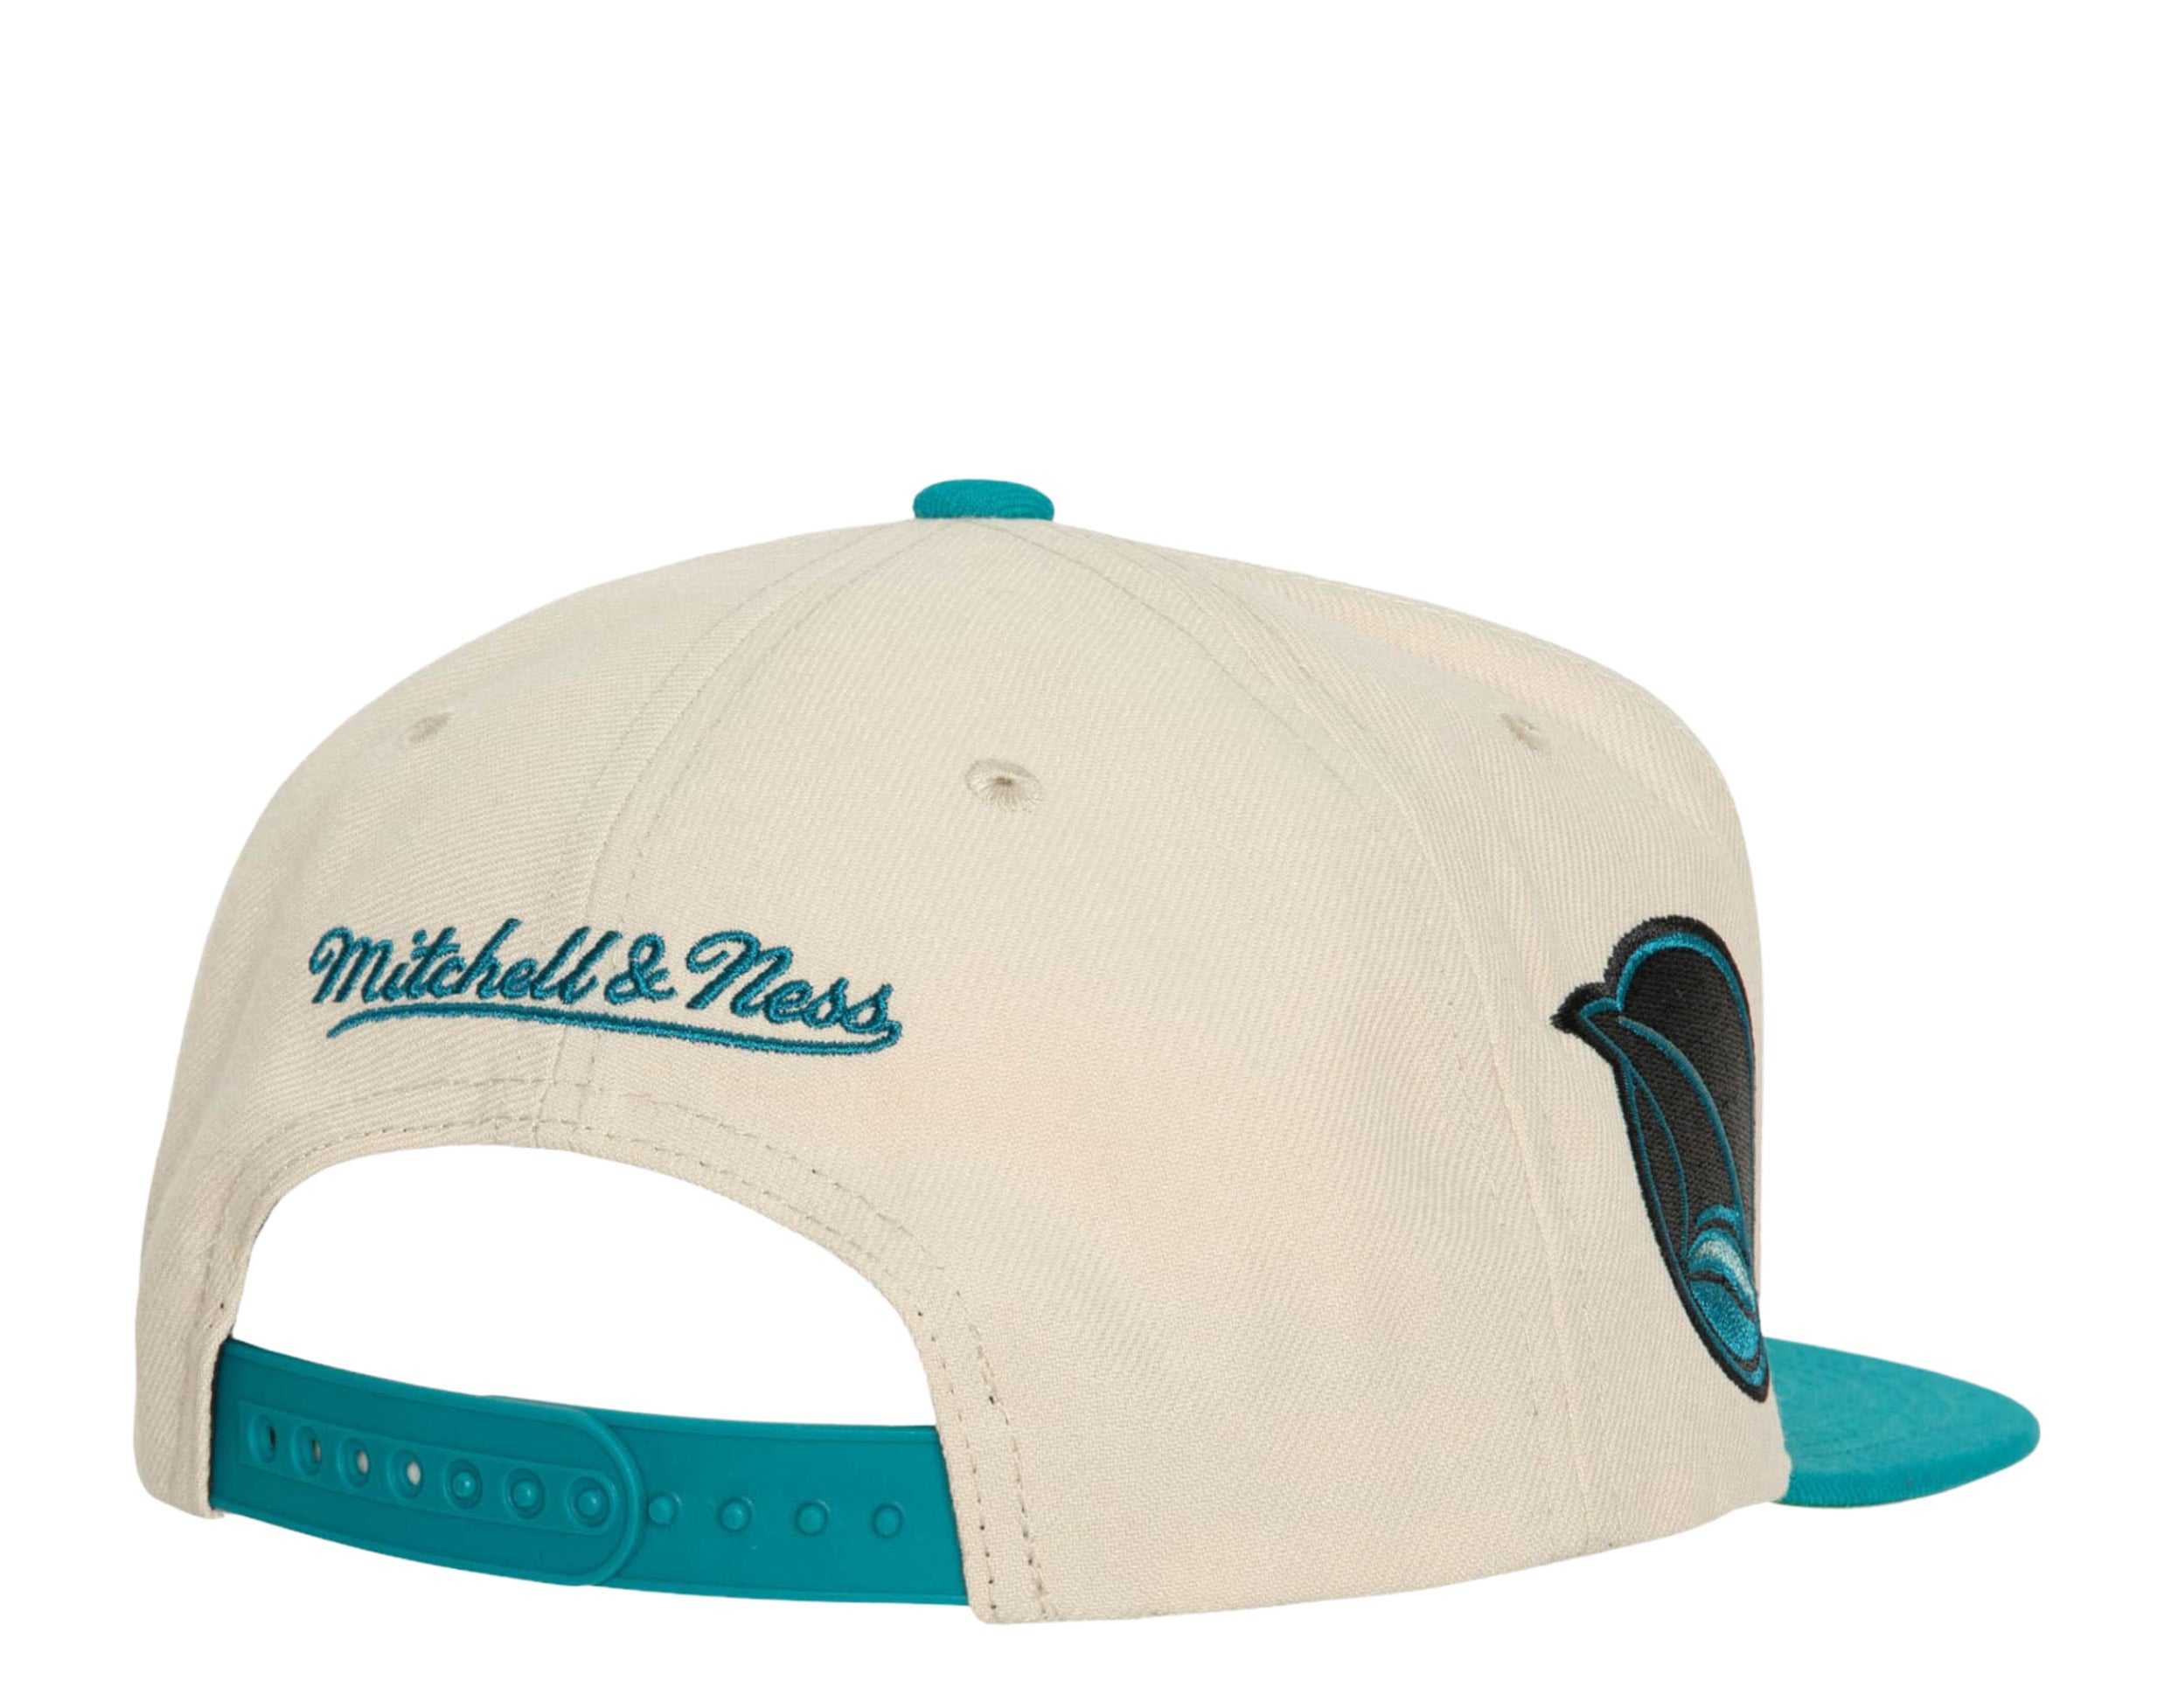 San Jose Sharks NHL Vintage Off-White Snapback Hat